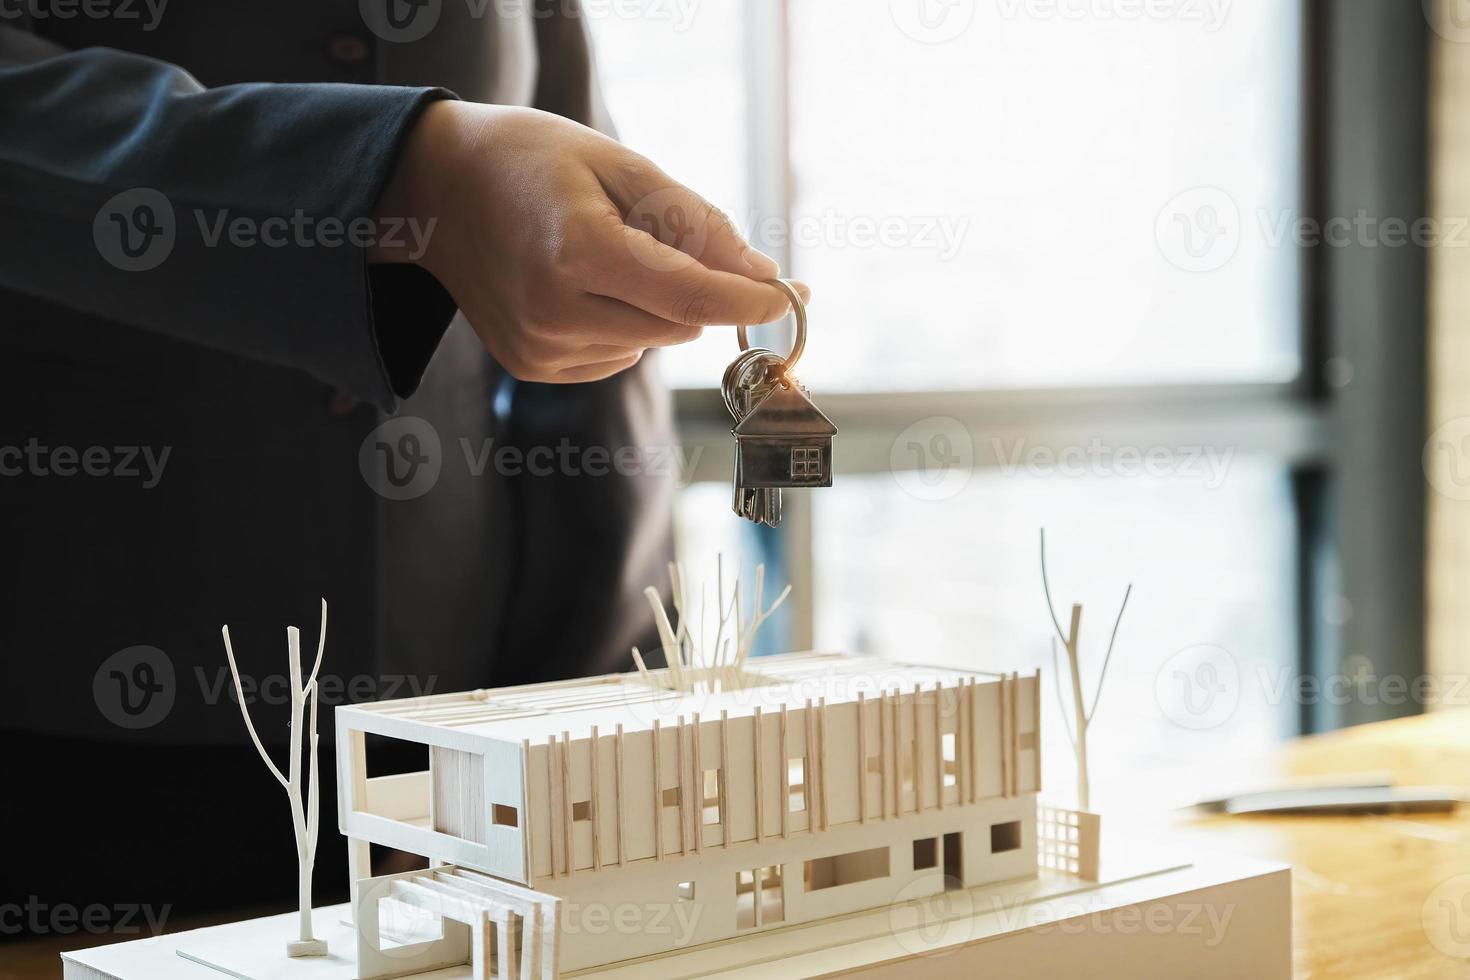 fastighetsmäklare går med på att köpa ett hem och ge nycklar till kunder på deras byråns kontor. konceptavtal. foto